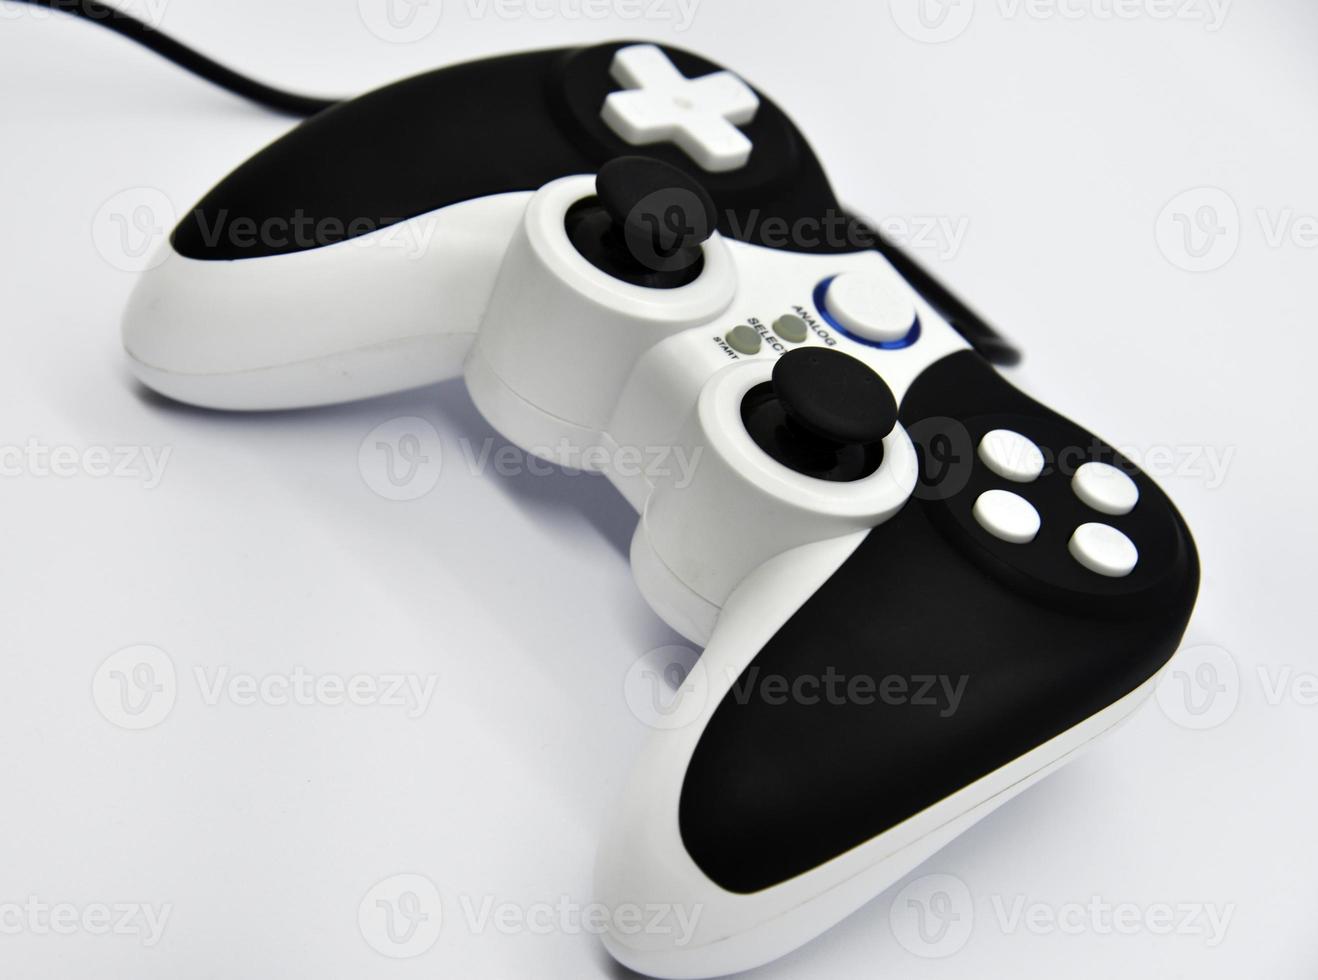 la manette est en noir et blanc sur fond blanc. gros plan du joystick de jeu. une manette de jeu pour une console de jeux. photo